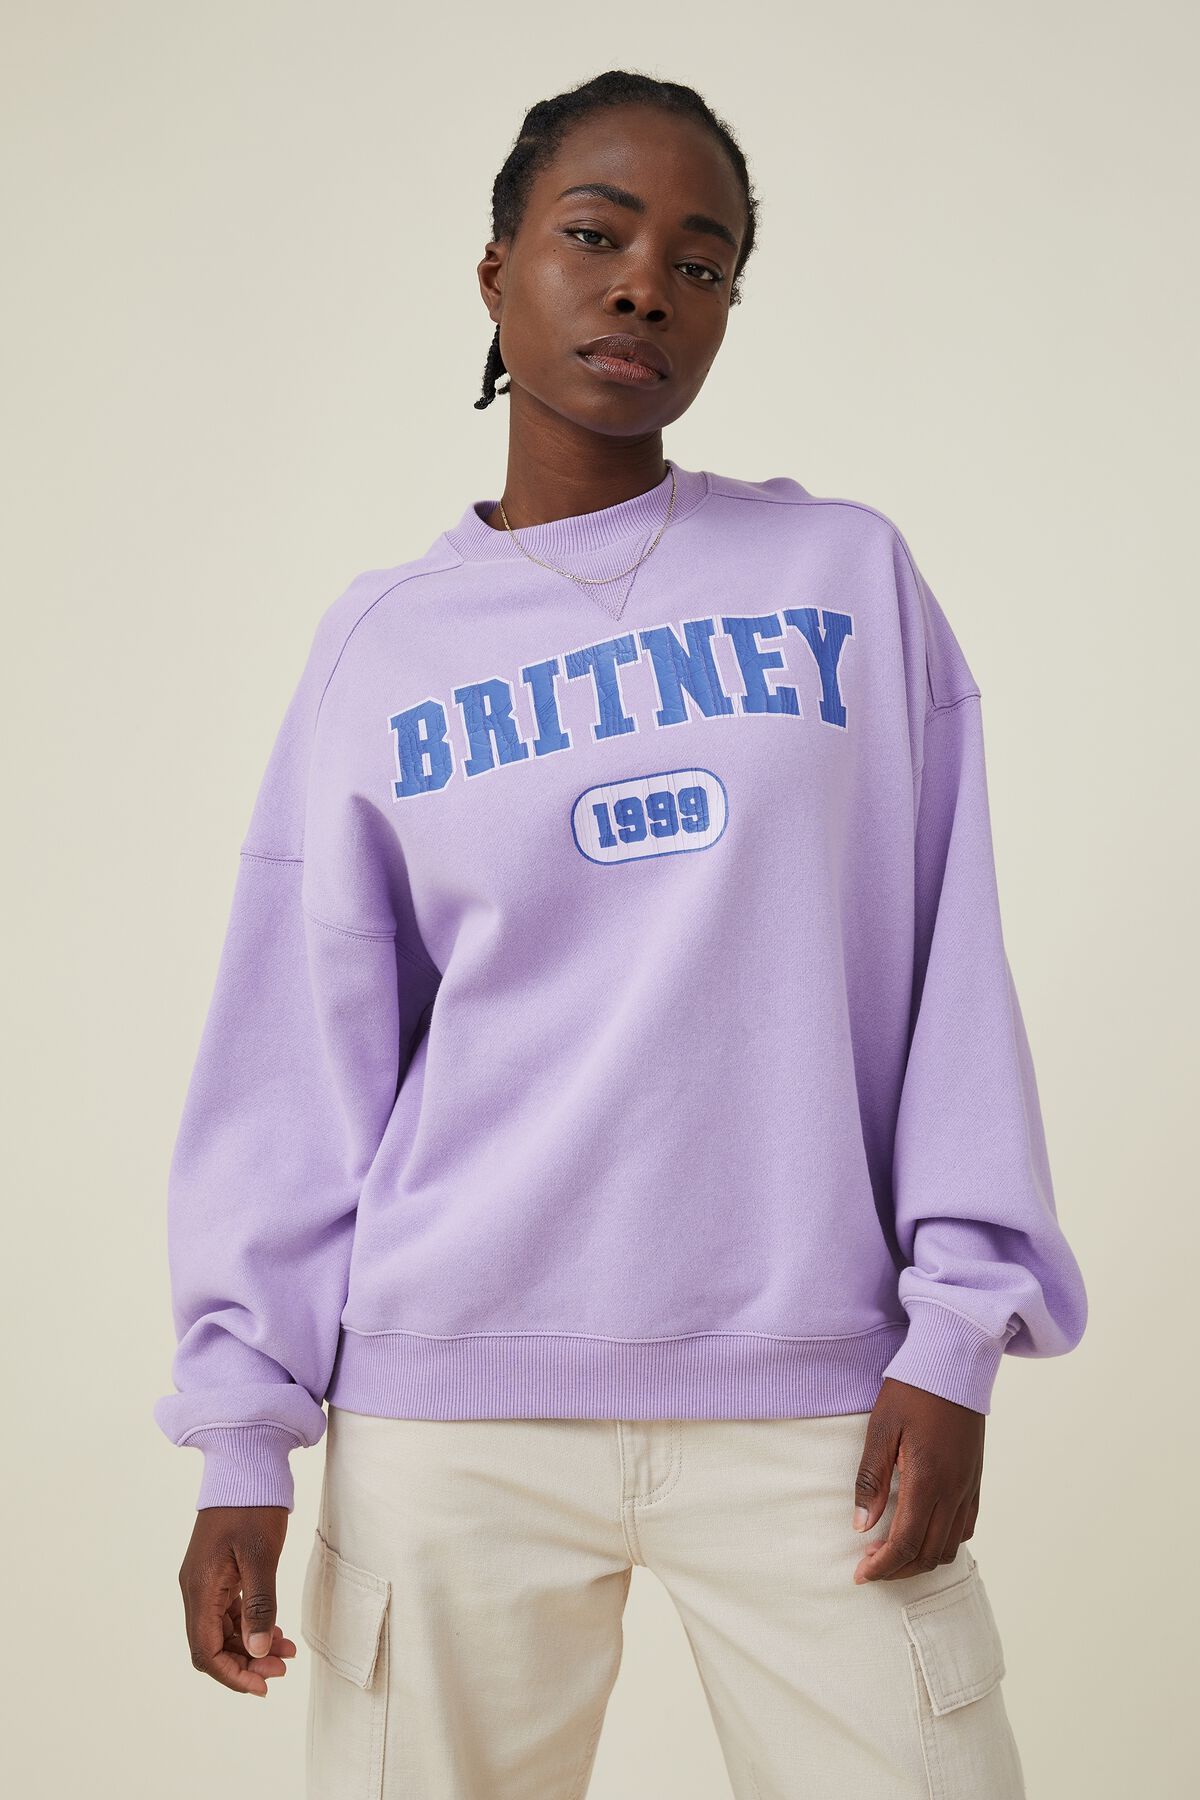 Britney Spears Crew Sweatshirt | Cotton On (ANZ)